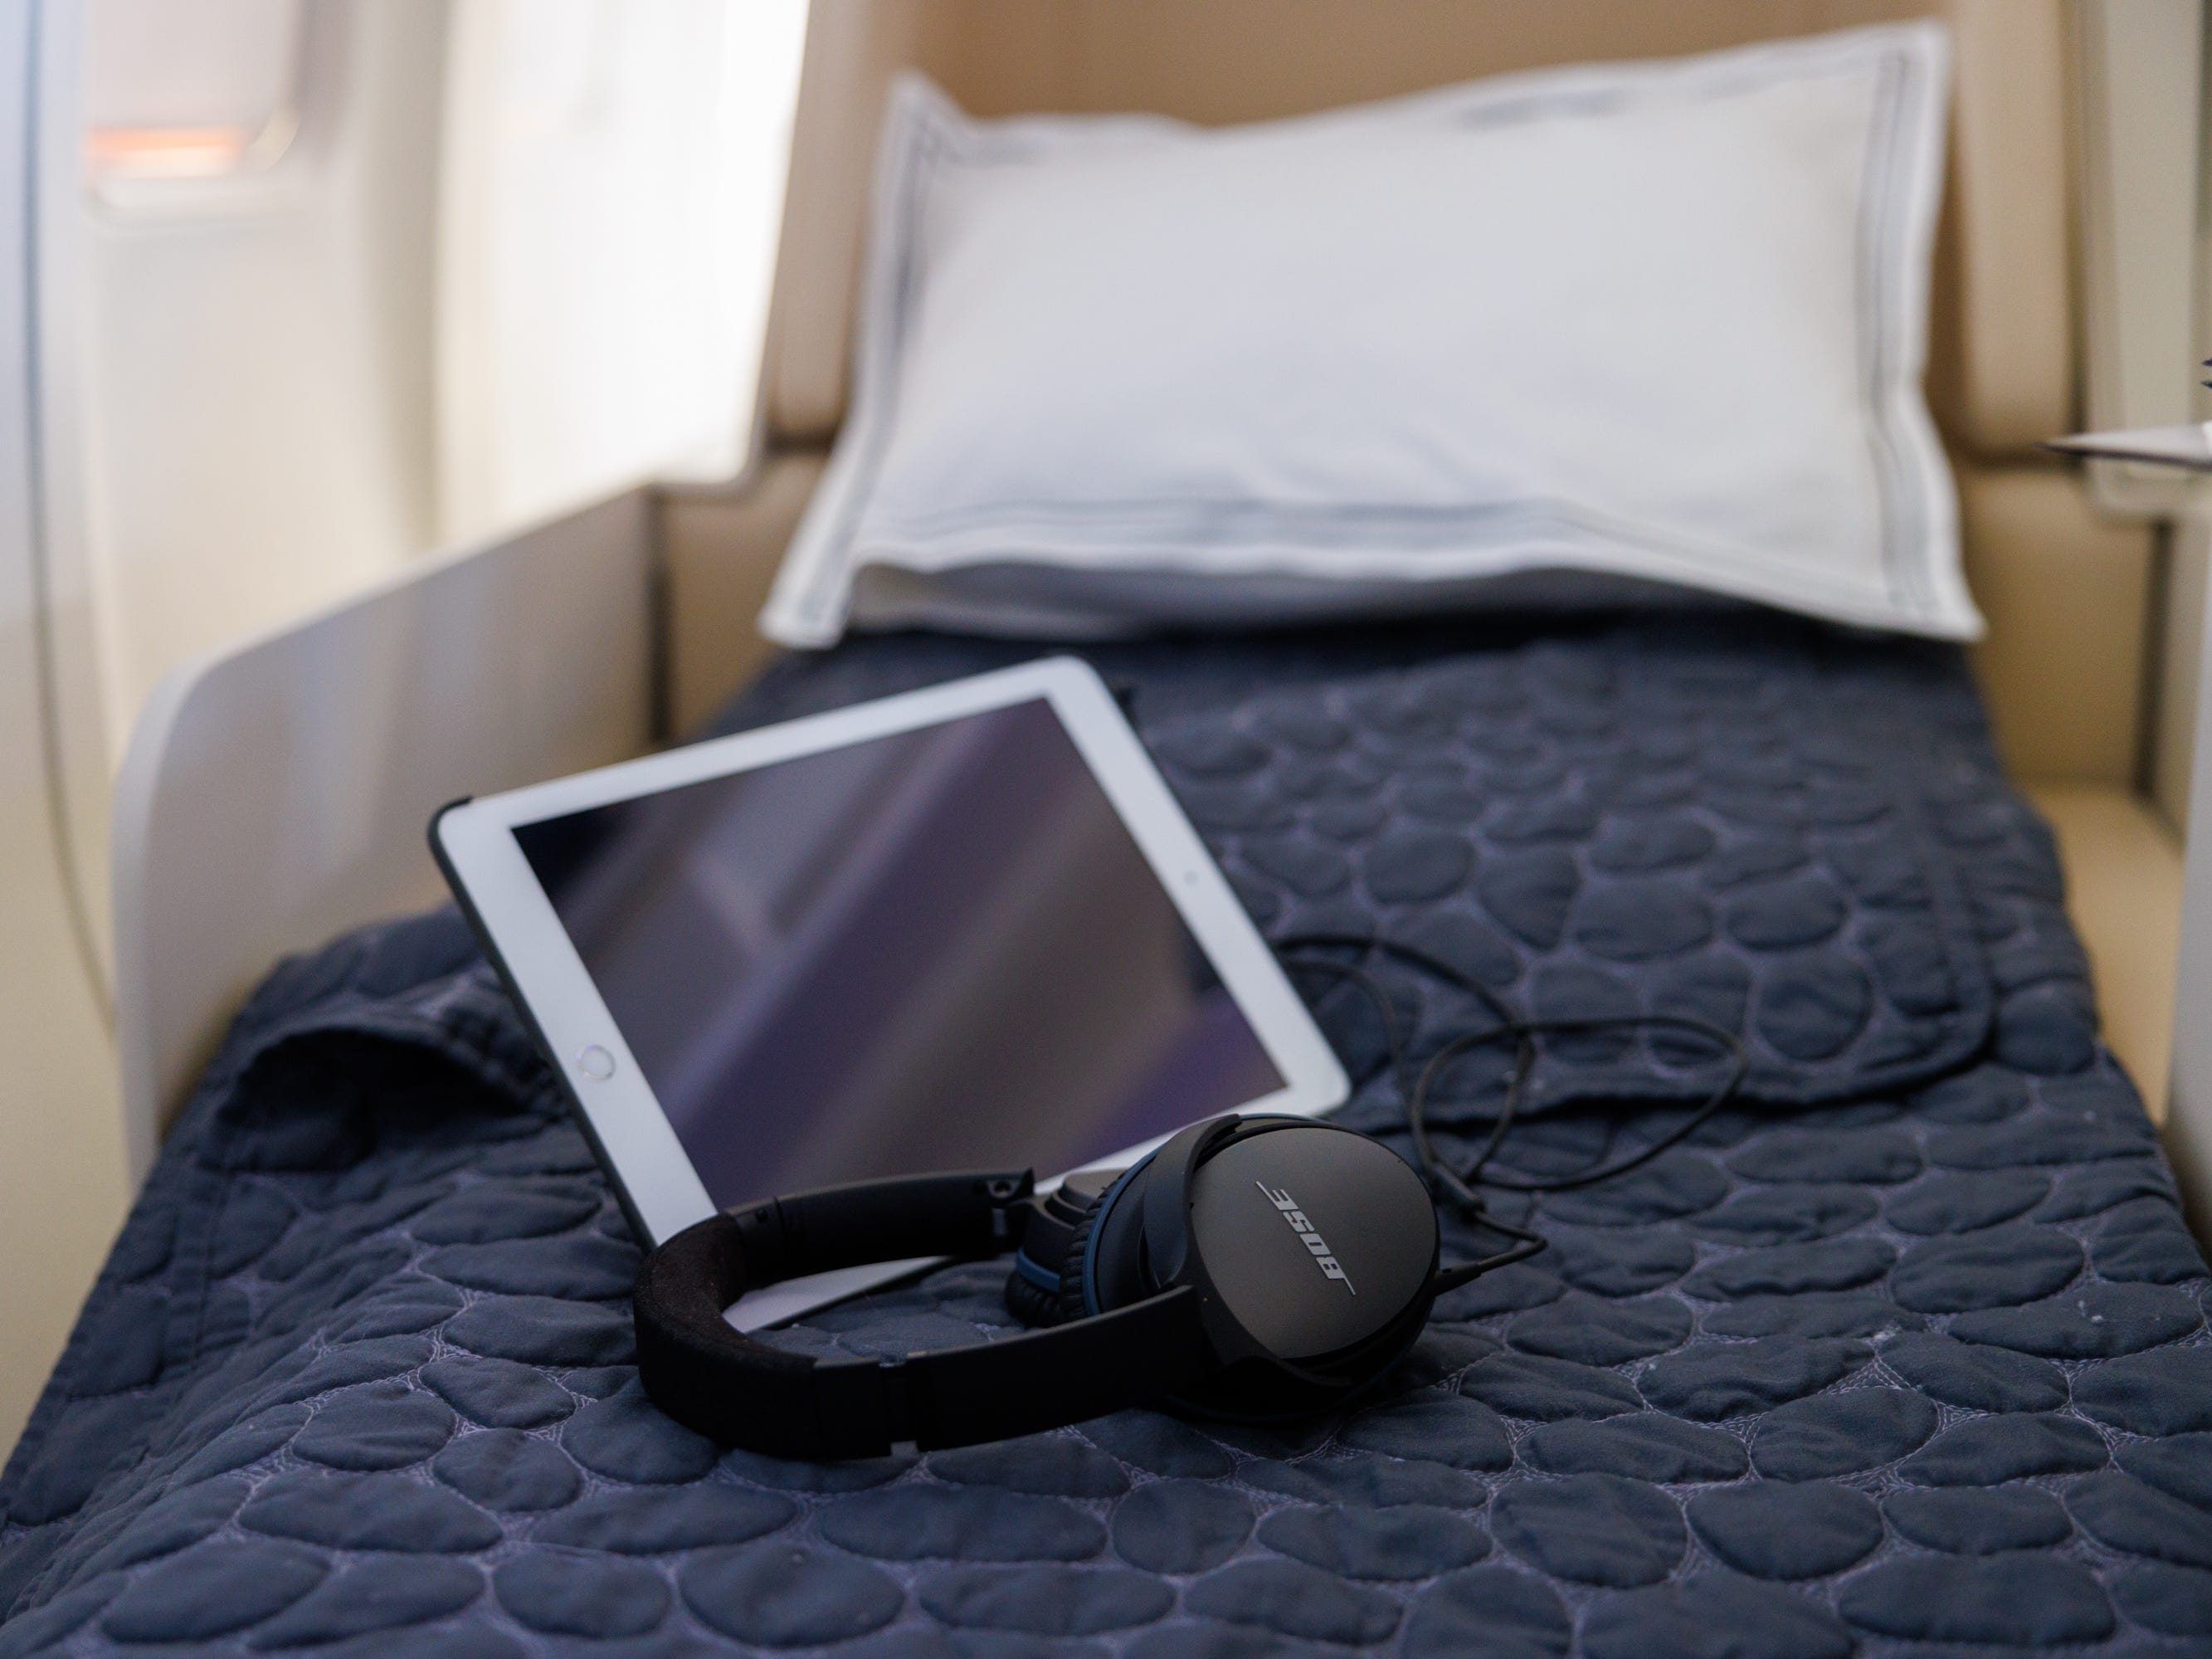 Ein weißes iPad und geräuschunterdrückende Bose-Kopfhörer auf dem Liegebett.